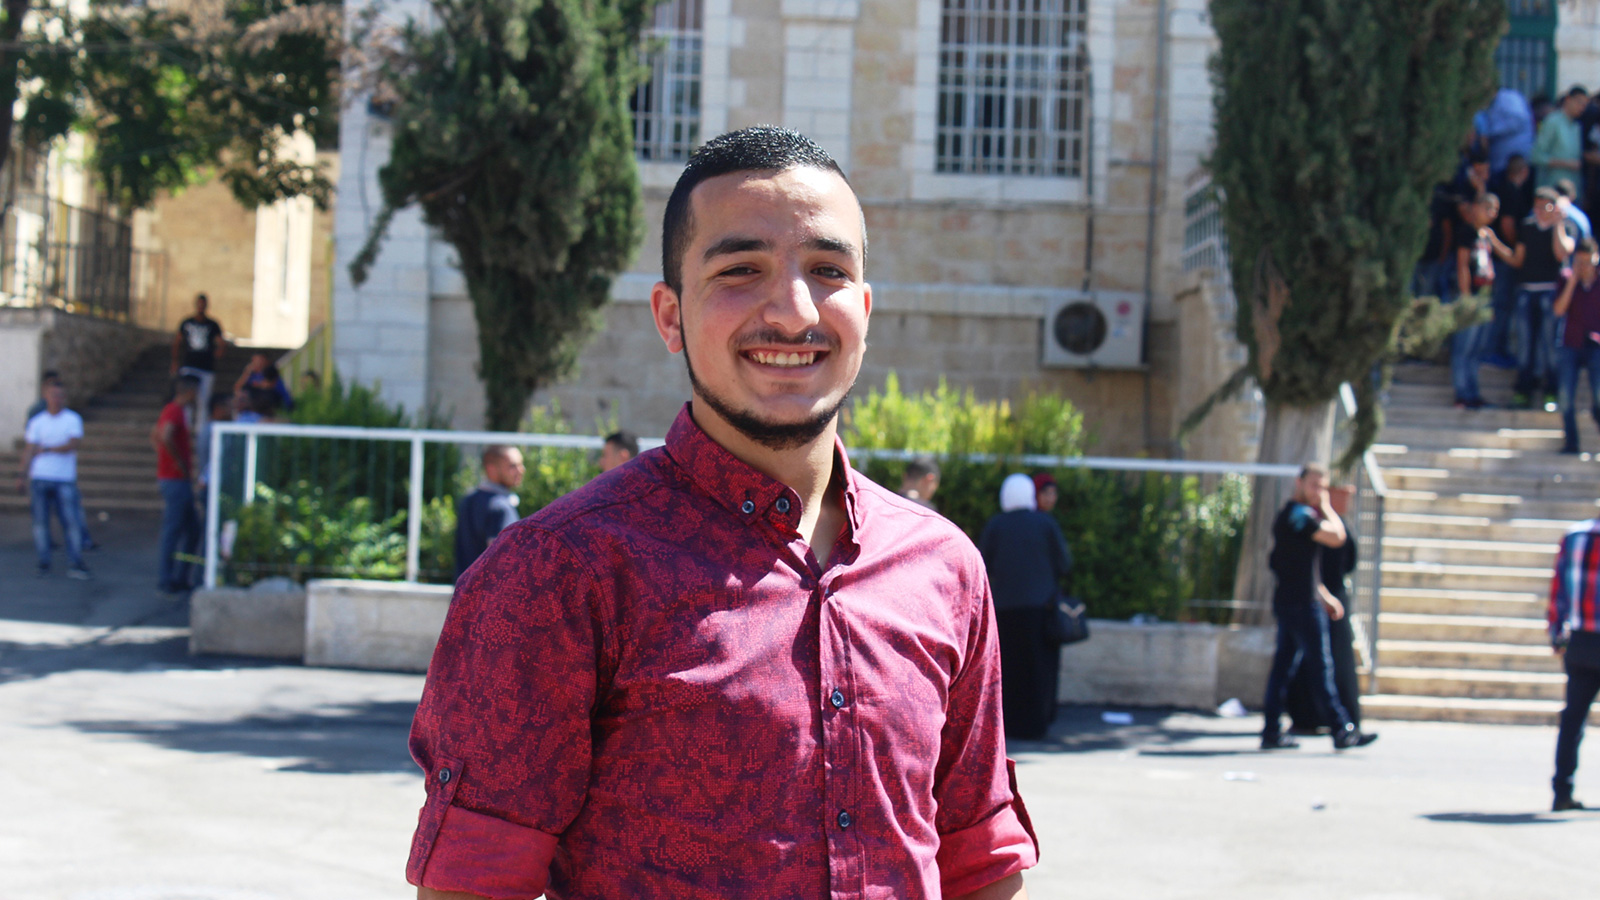 الطالب وليد أبو سنينة سعيد بالنجاح لكنه لم يقرر التخصص الذي يريد دراسته (الجزيرة نت)